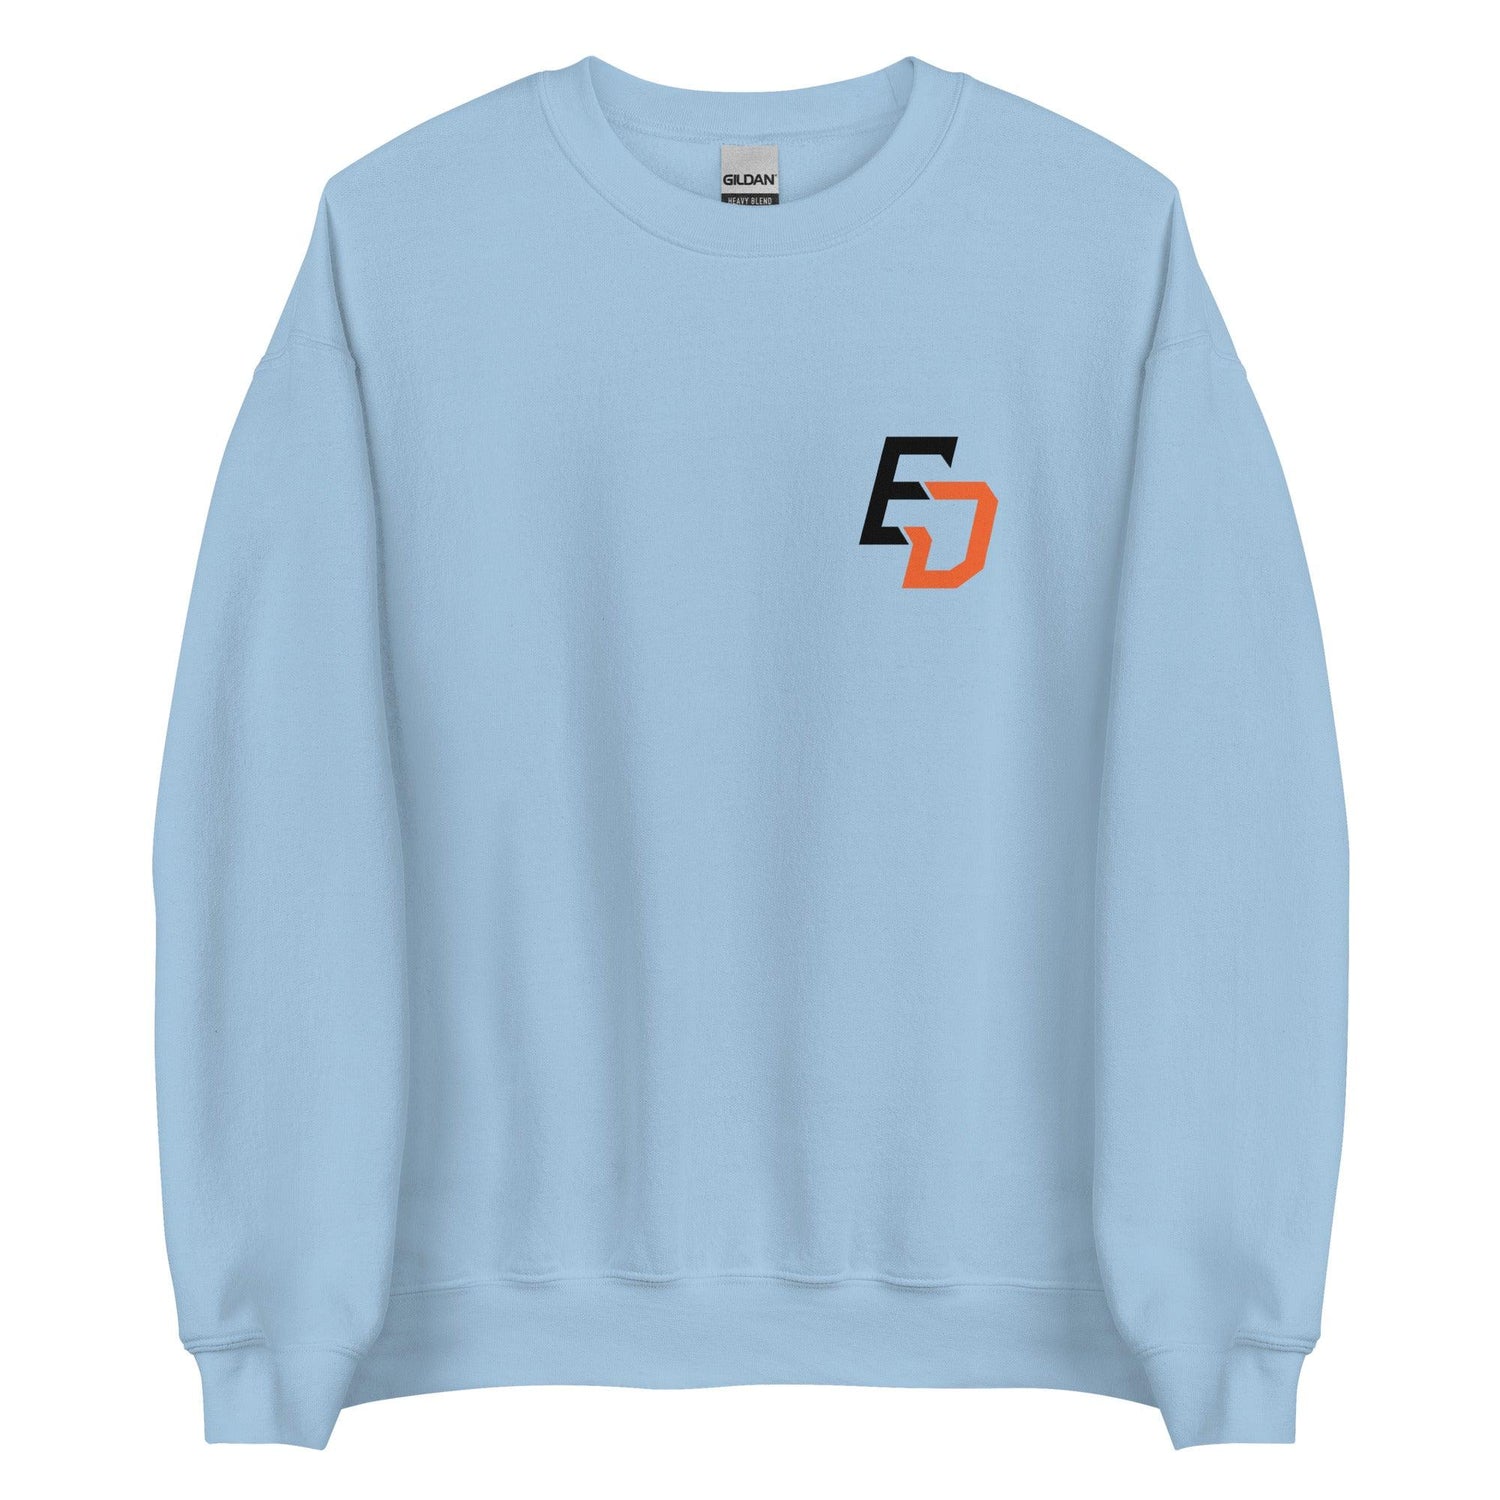 Ernie Day "Essential" Sweatshirt - Fan Arch